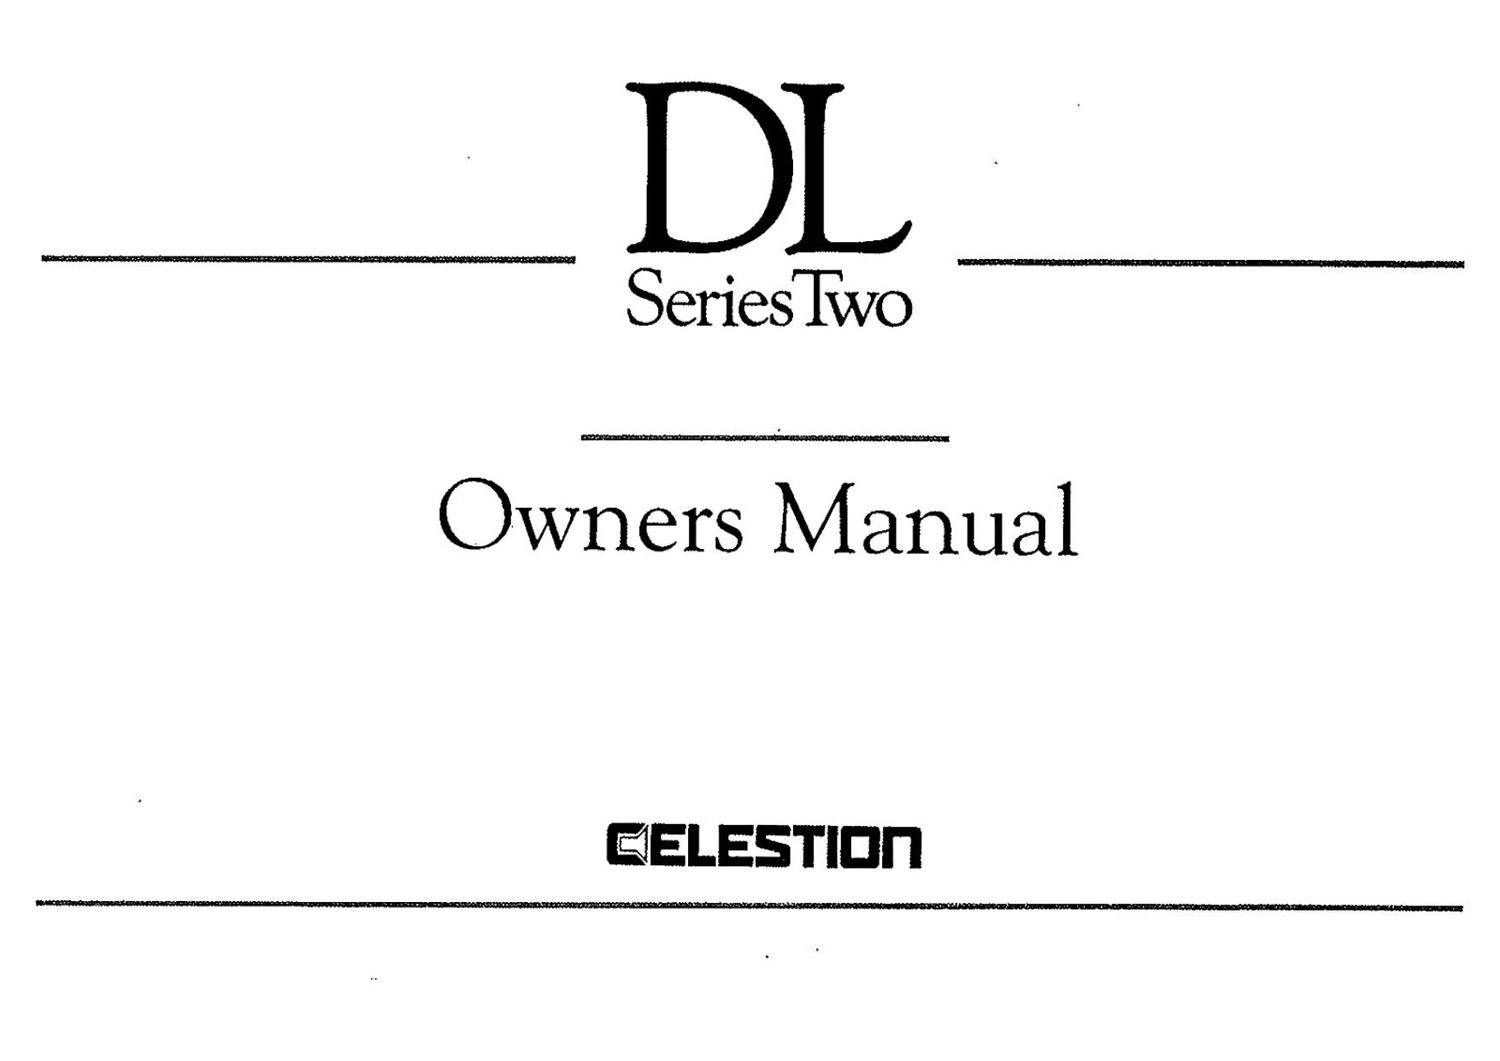 Celestion DL4 DL6 DL8 DL10 DL12 Series Two Owners Manual